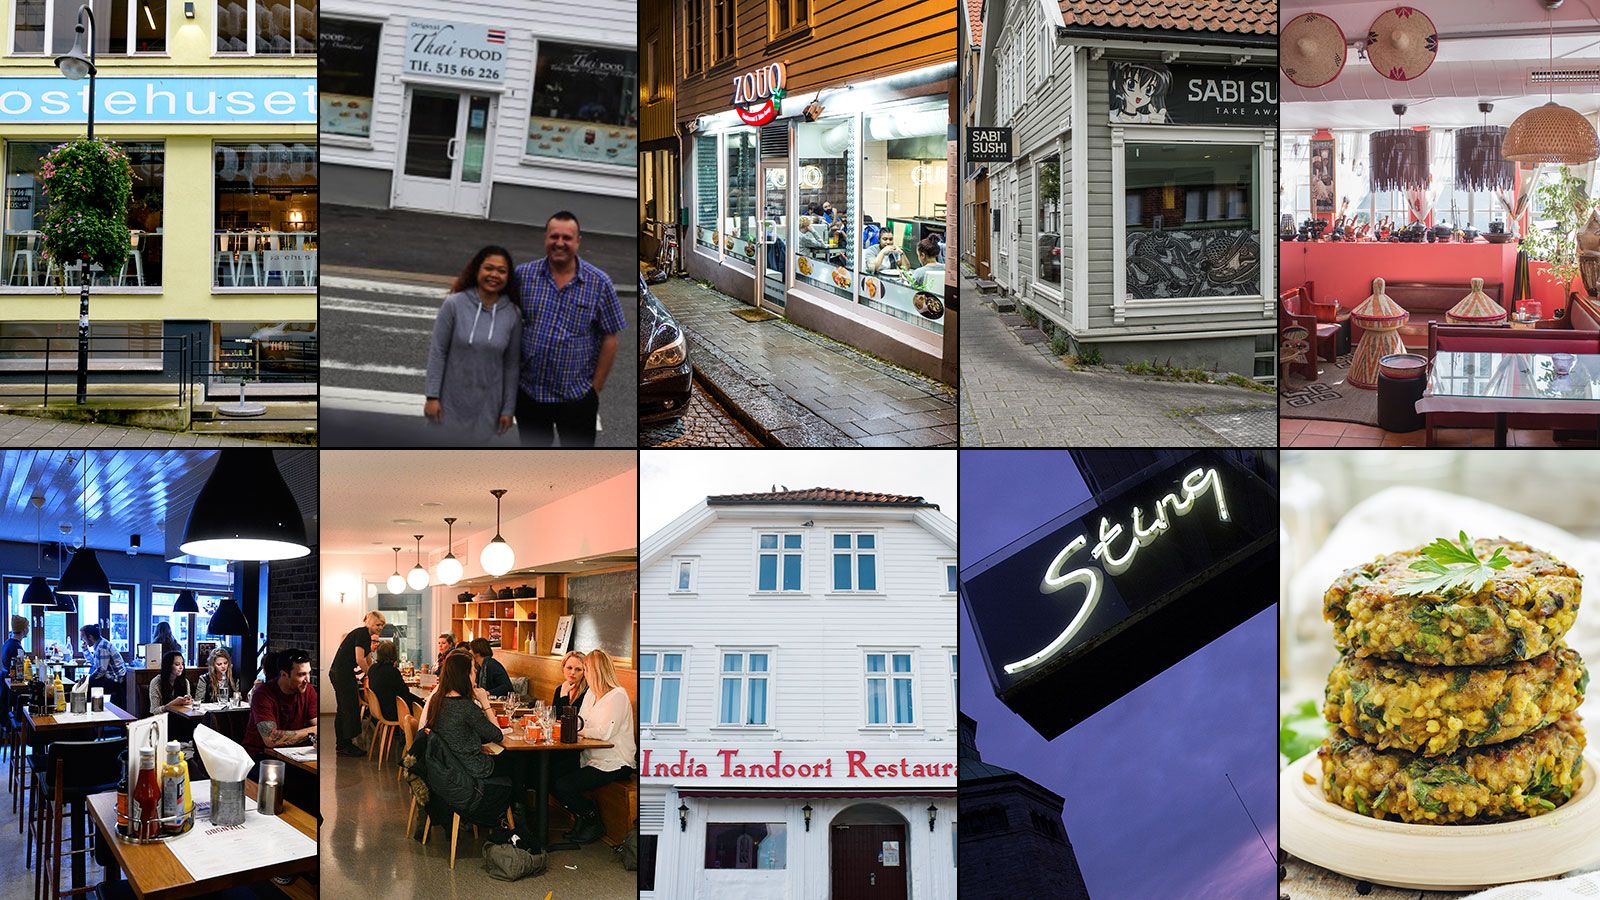 Lurer du på hvor du får tak i vegansk mat i Stavanger? Byas gir deg oversikten.